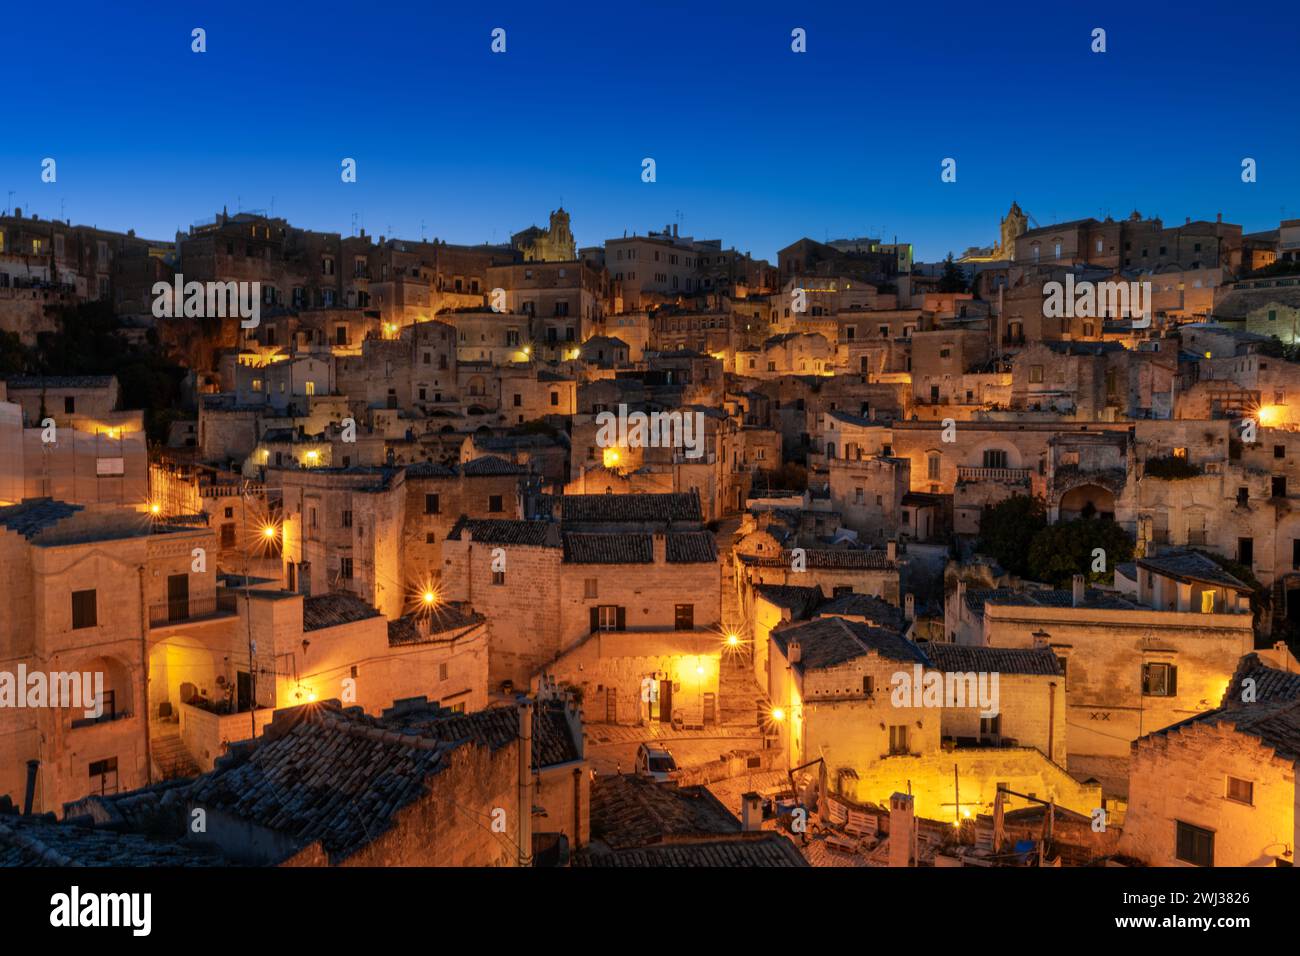 Vista della città vecchia di Matera dopo il tramonto con le luci accese Foto Stock